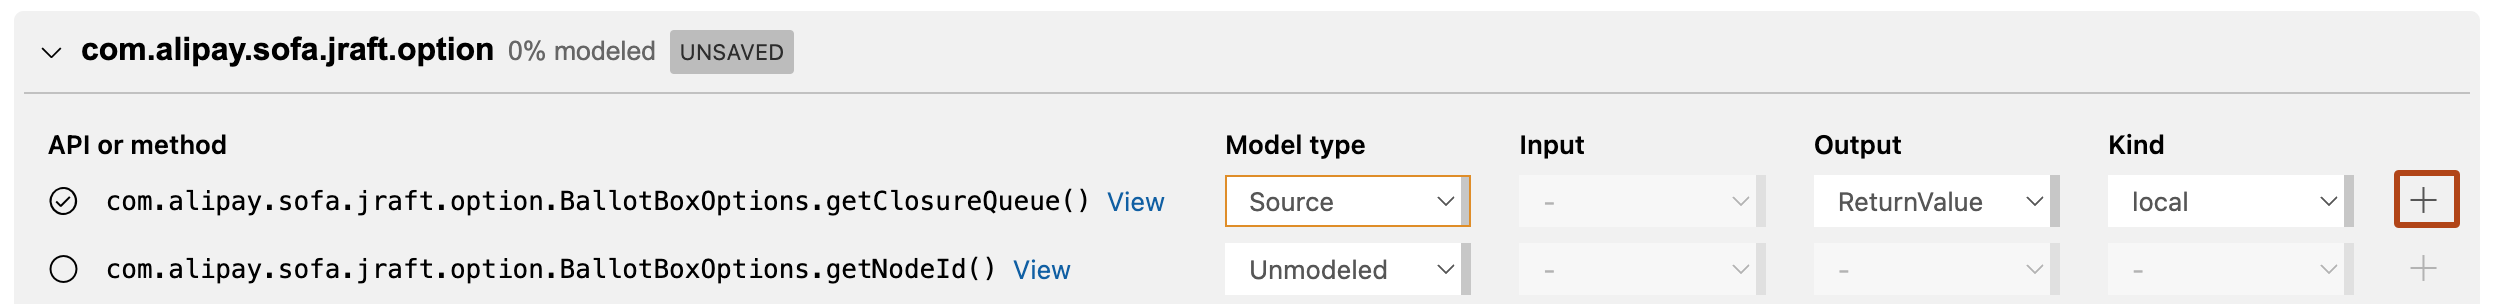 Captura de pantalla de la vista “Modo de dependencia” del editor de paquetes de modelos de CodeQL en Visual Studio Code en la que se muestran los métodos públicos disponibles en el paquete “com.alipay.soft.jraft.option” listo para el modelado. La opción “Ver” aparece resaltada con un contorno naranja.